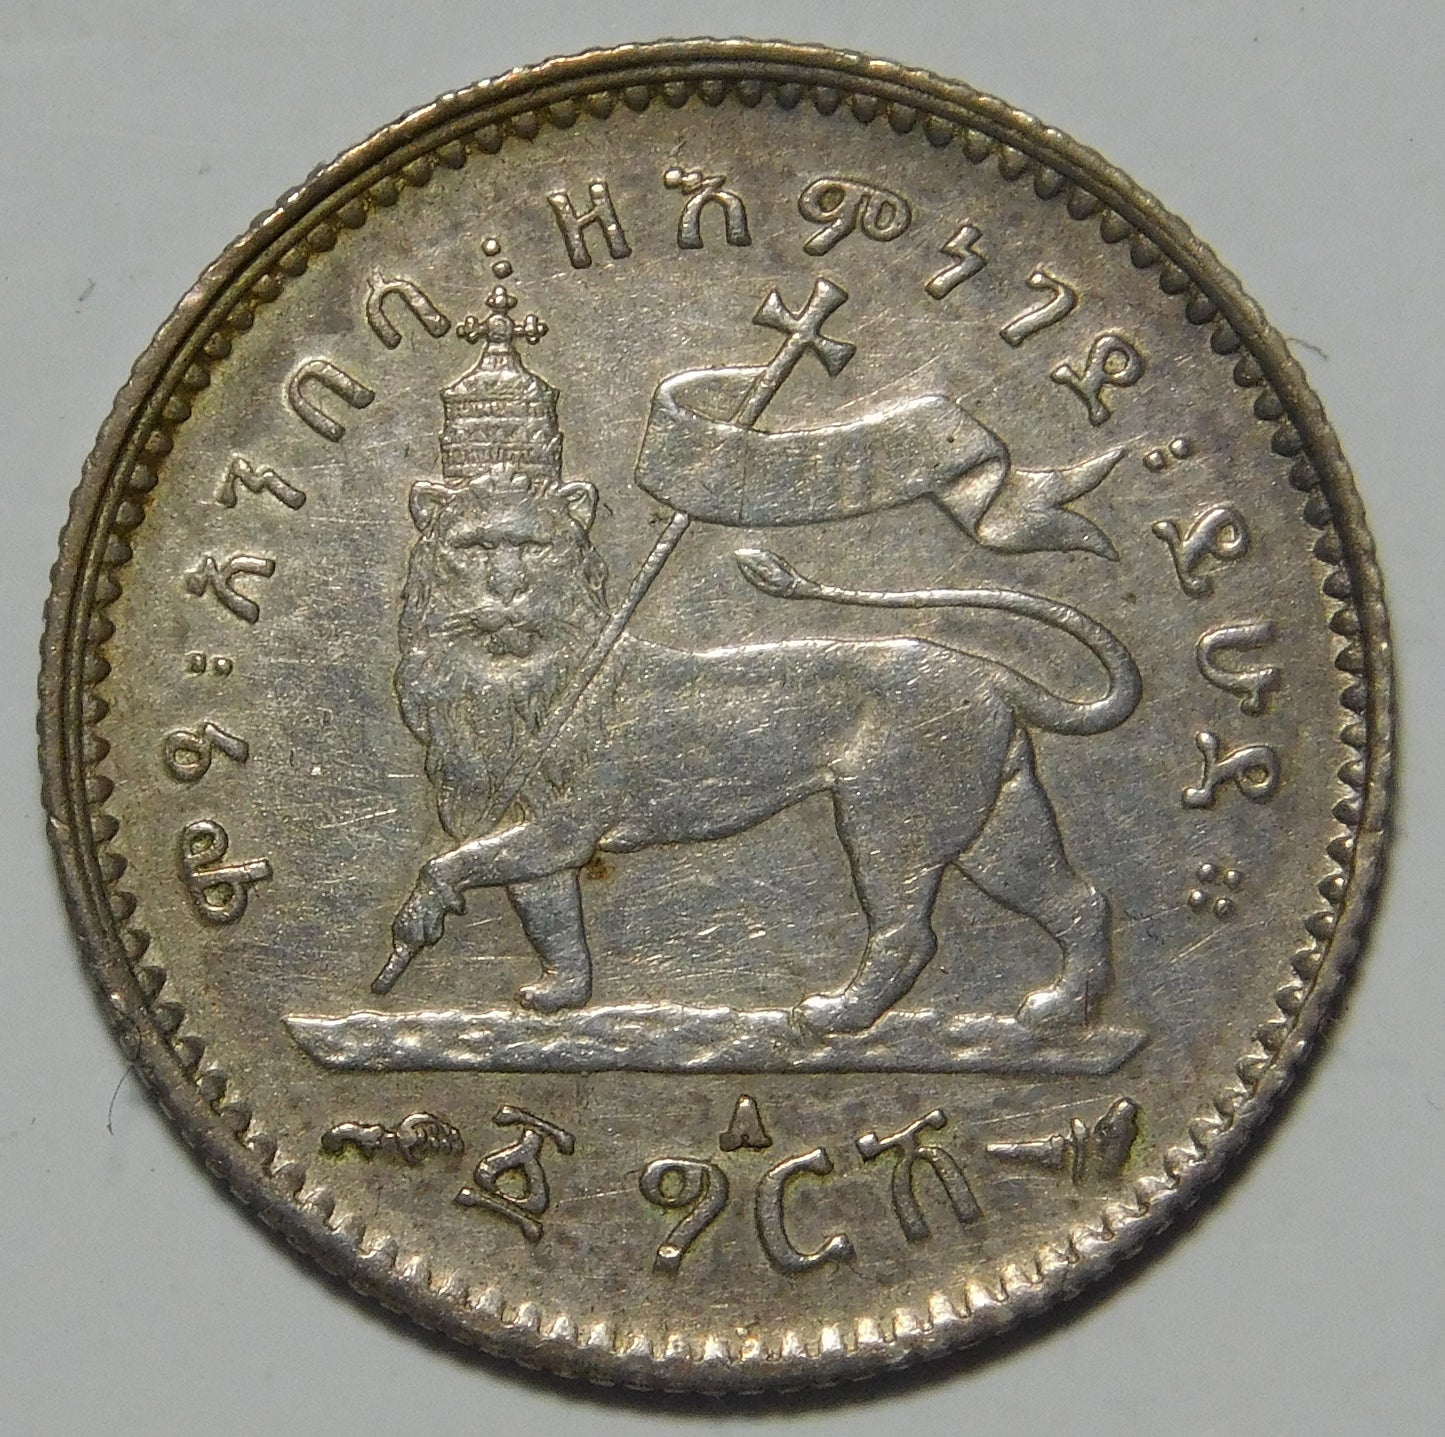 Ethiopia - Menelik II - Gersh 1902/1903 - EE1895